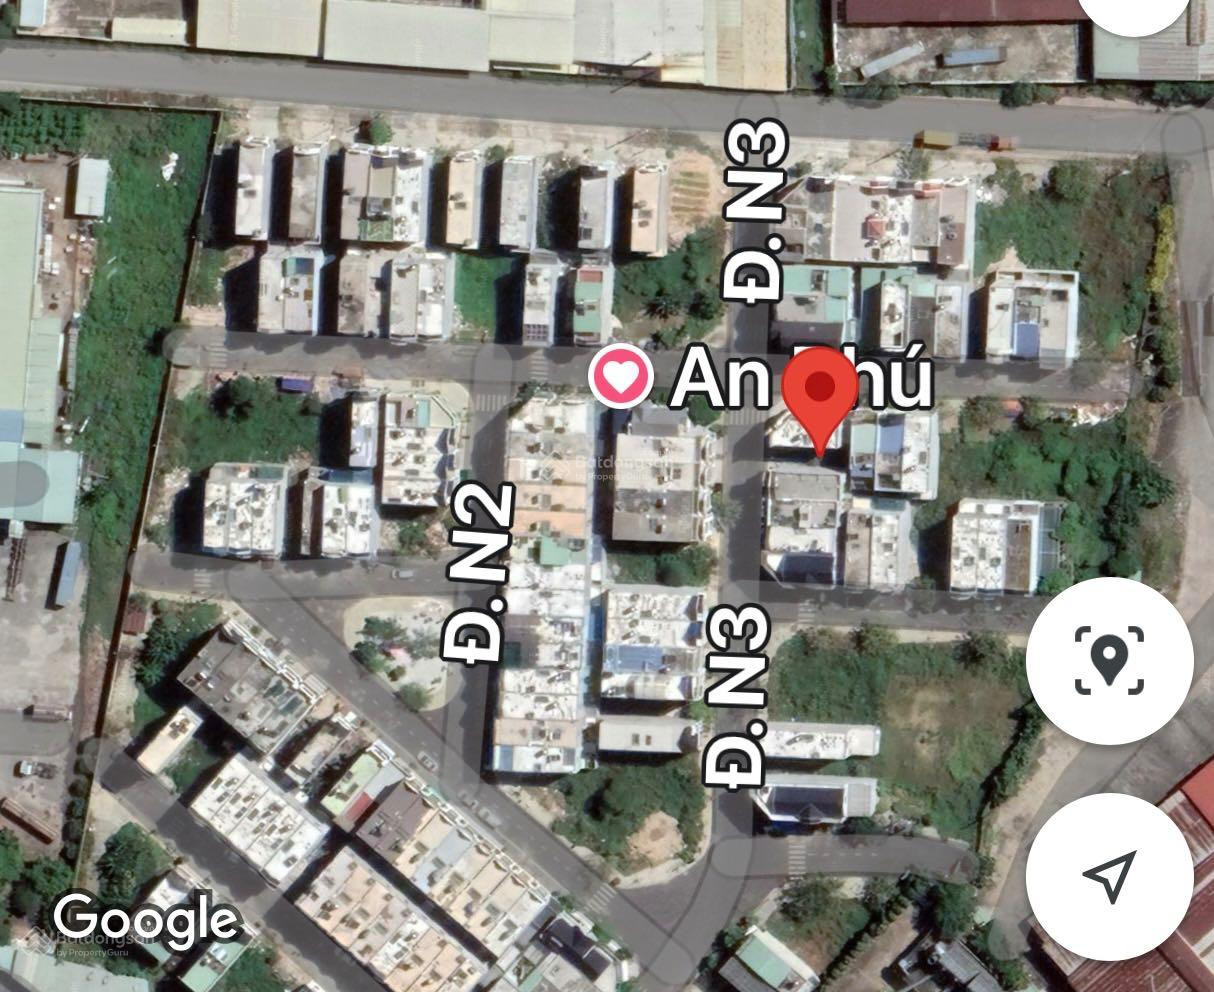 Chính chủ cần bán lô đất khu nhà ở An Phú Thuận An Bình Dương  5*16m vị trí đẹp - Ảnh 4